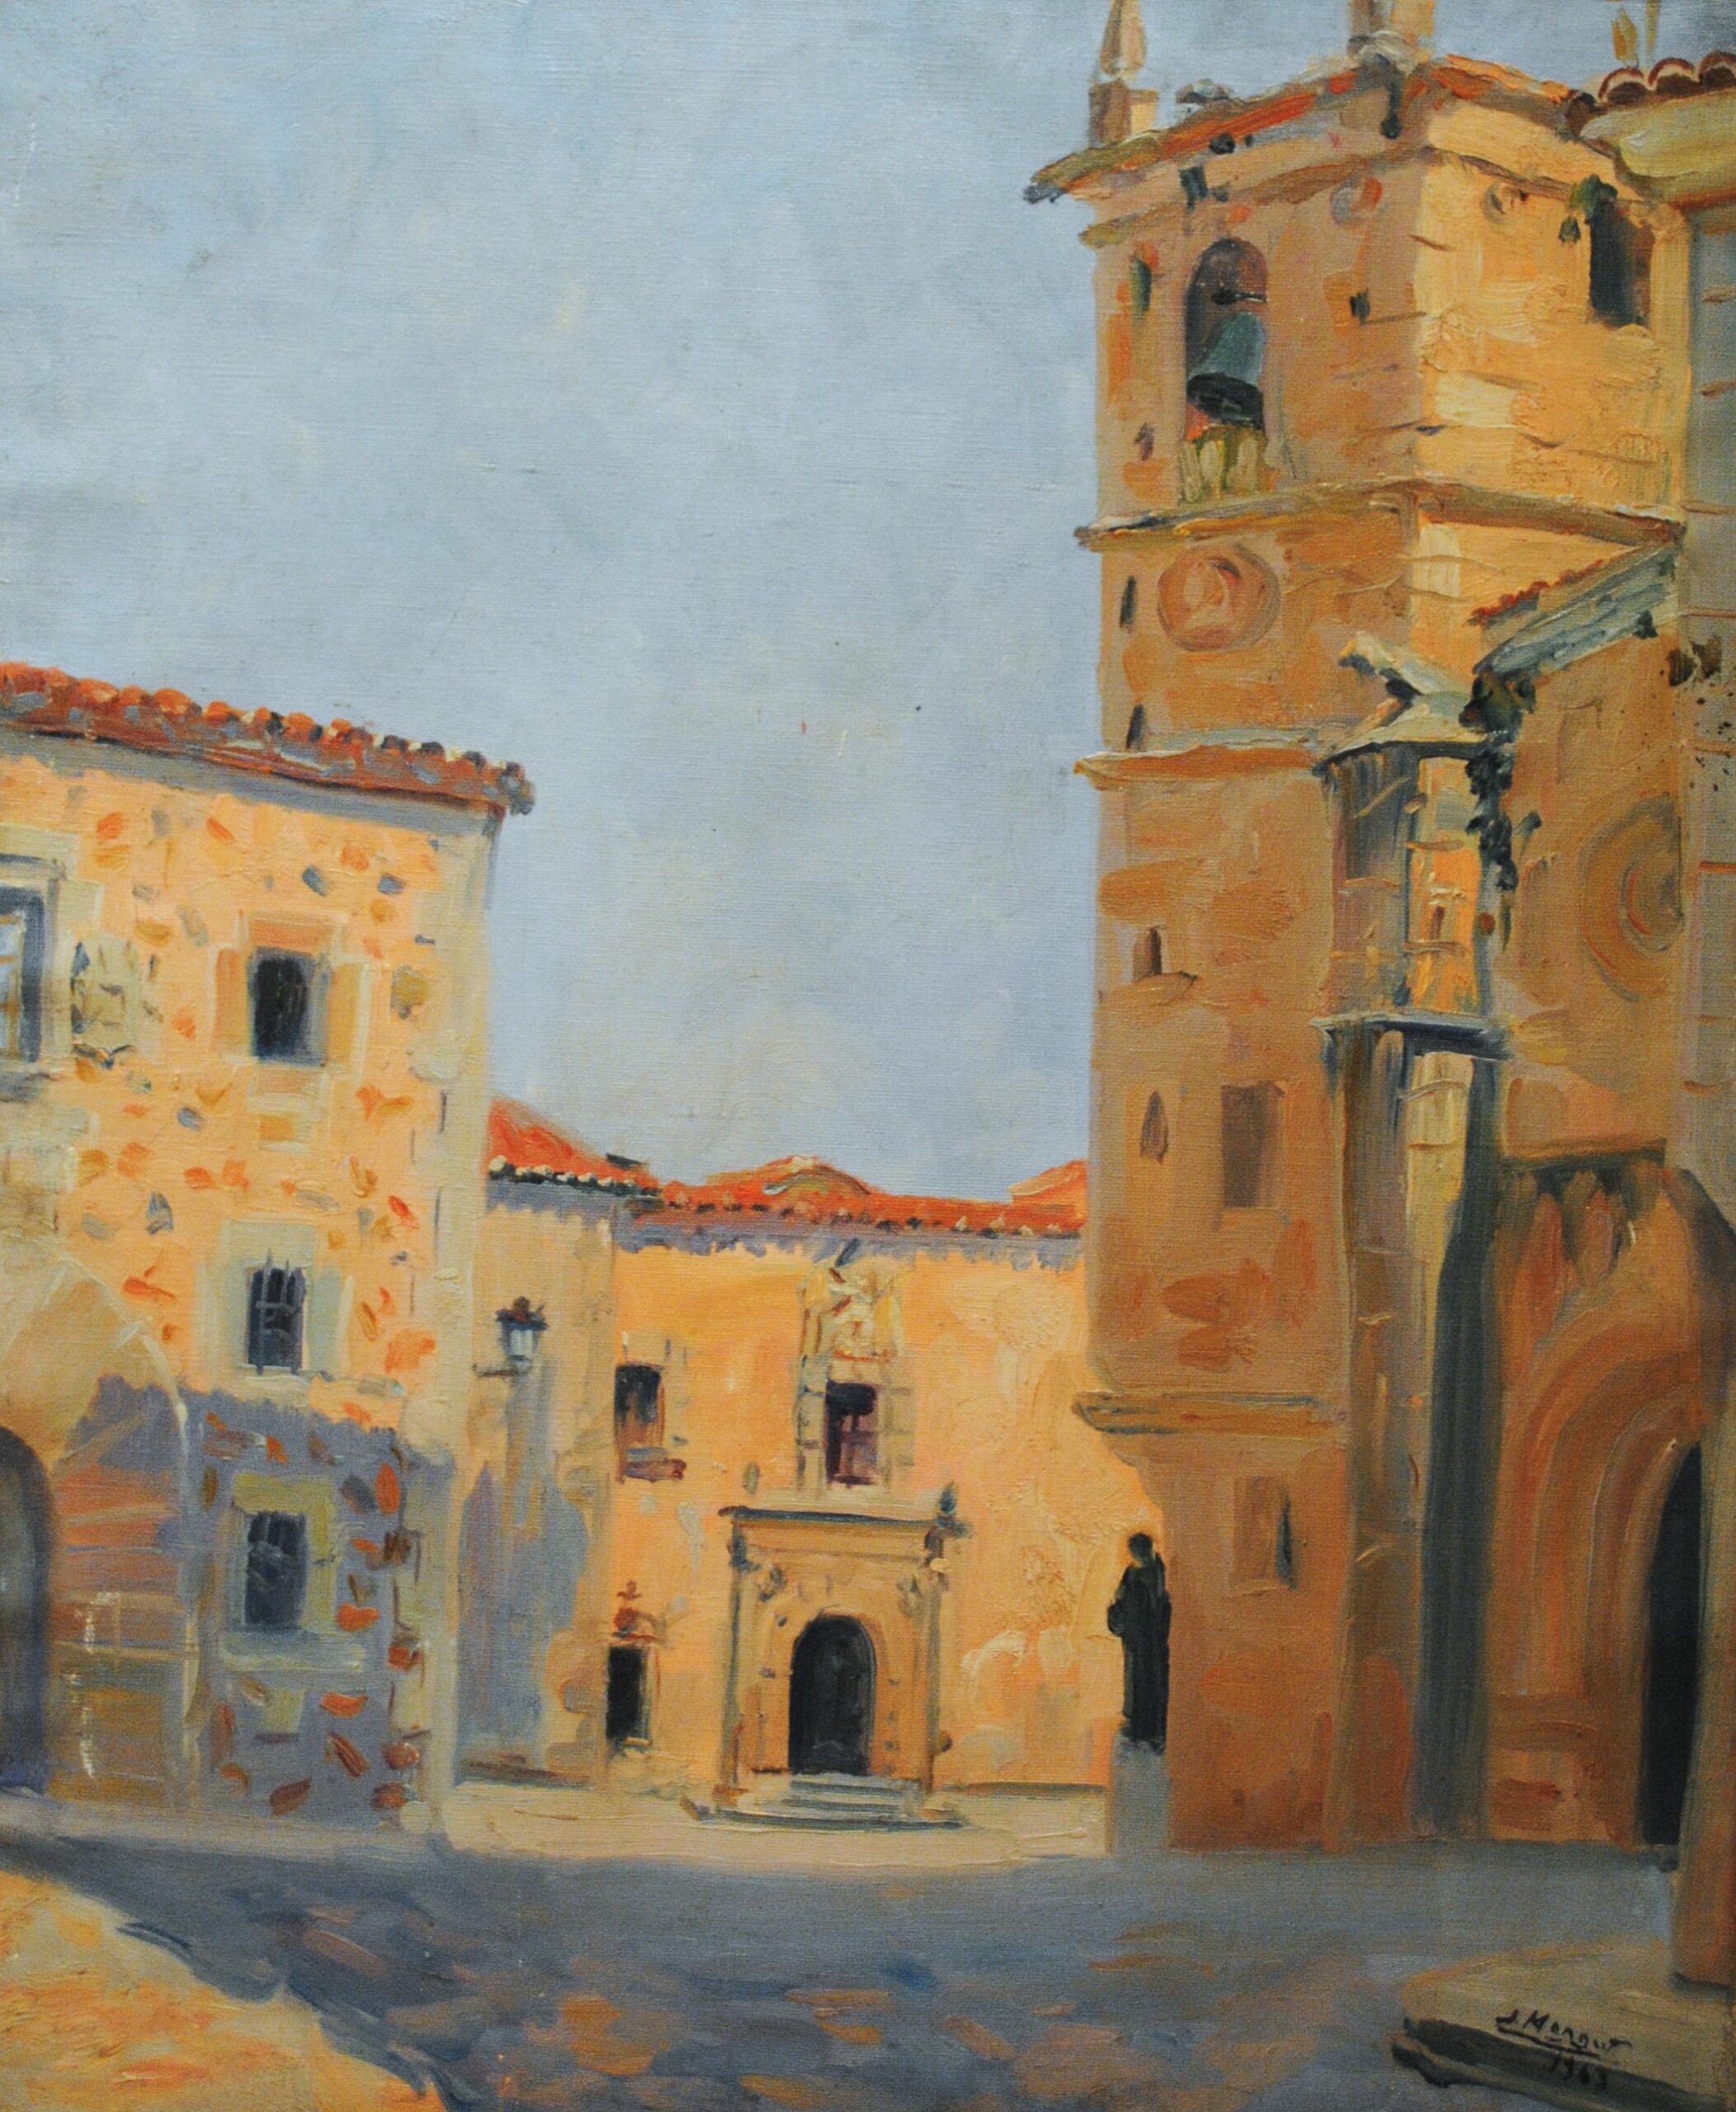 Pintura de José Manaut titulada Plaza con iglesia, Cáceres, 1963. Óleo sobre lienzo.